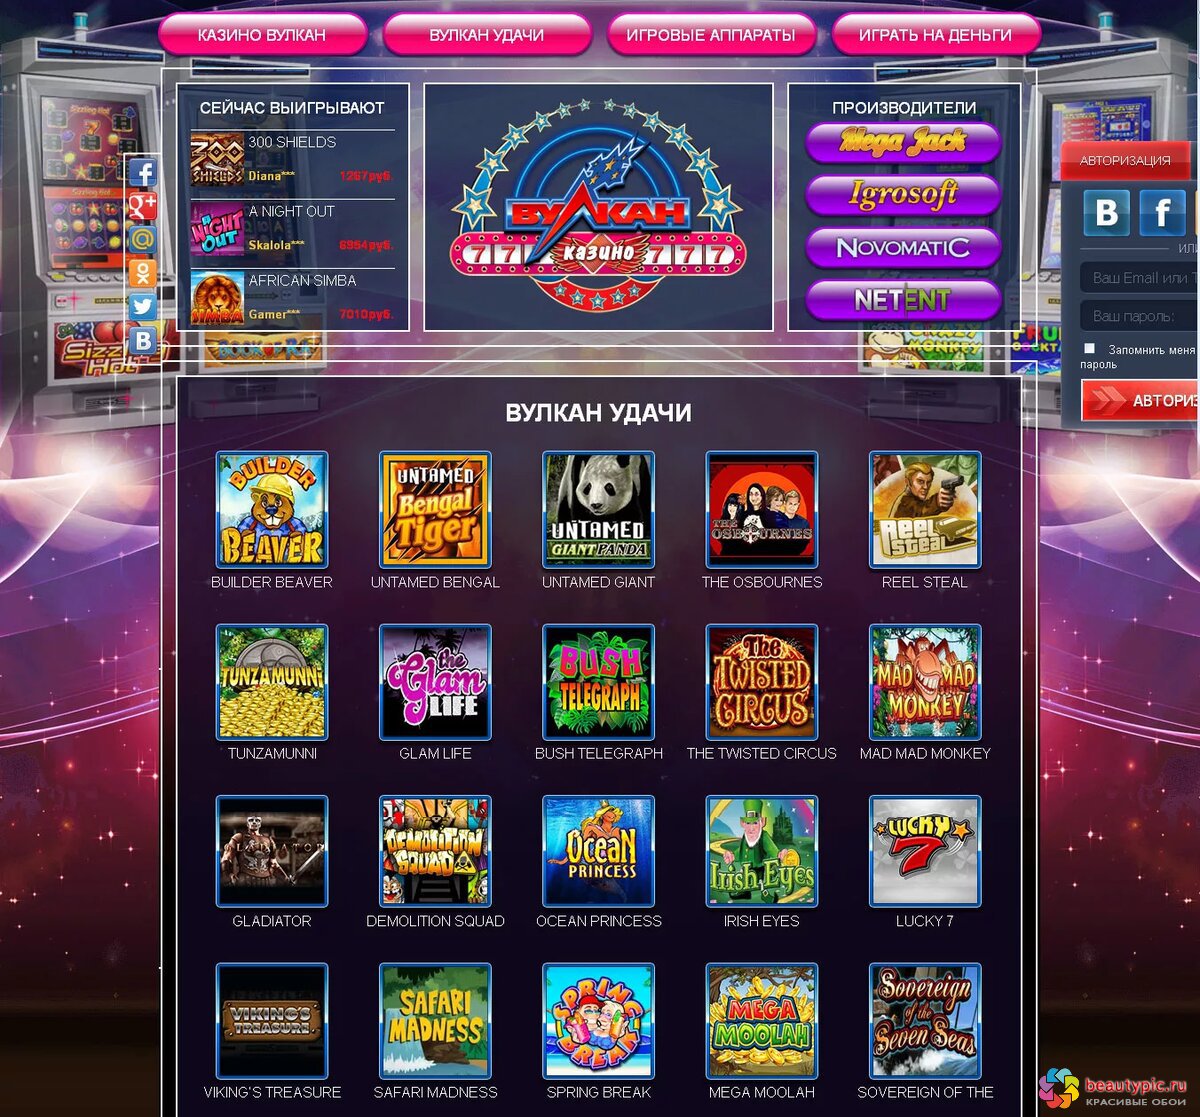 Вулкан игровые автоматы онлайн клуб вулкан казино играть алгоритм слотов онлайн казино